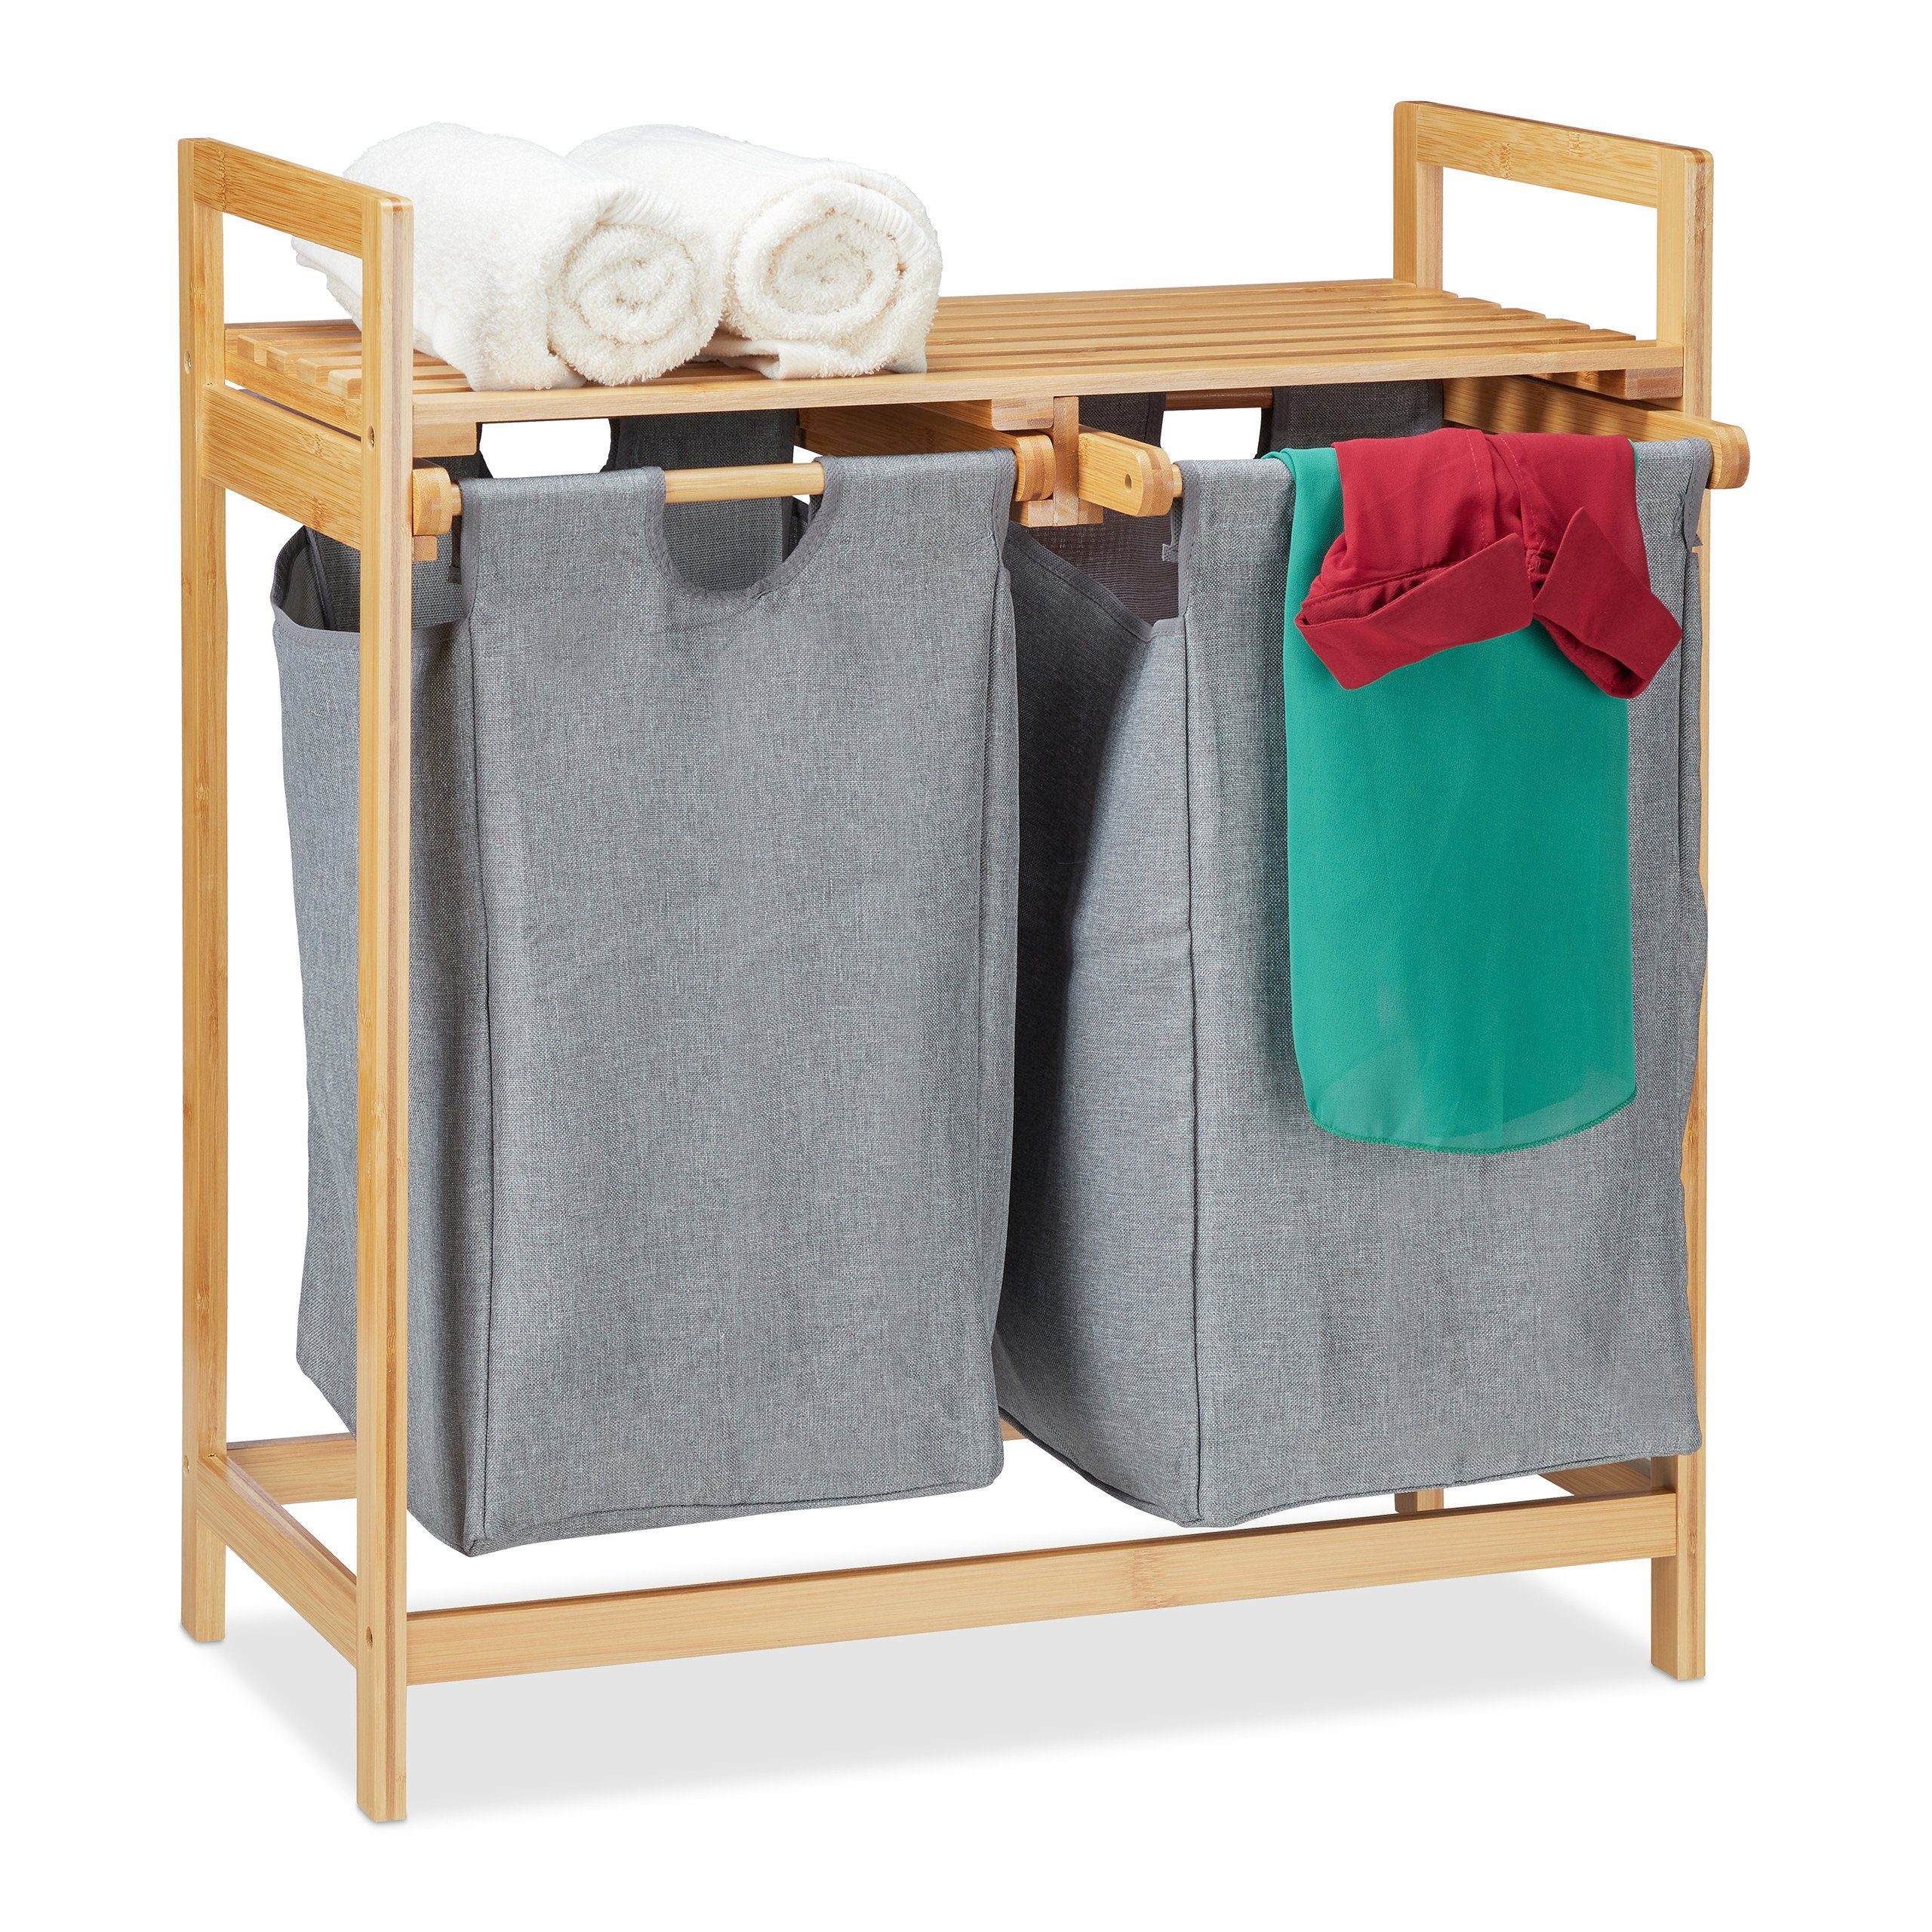 relaxdays Wäschekorb »Wäschekorb 2 Fächer mit Ablage« online kaufen | OTTO